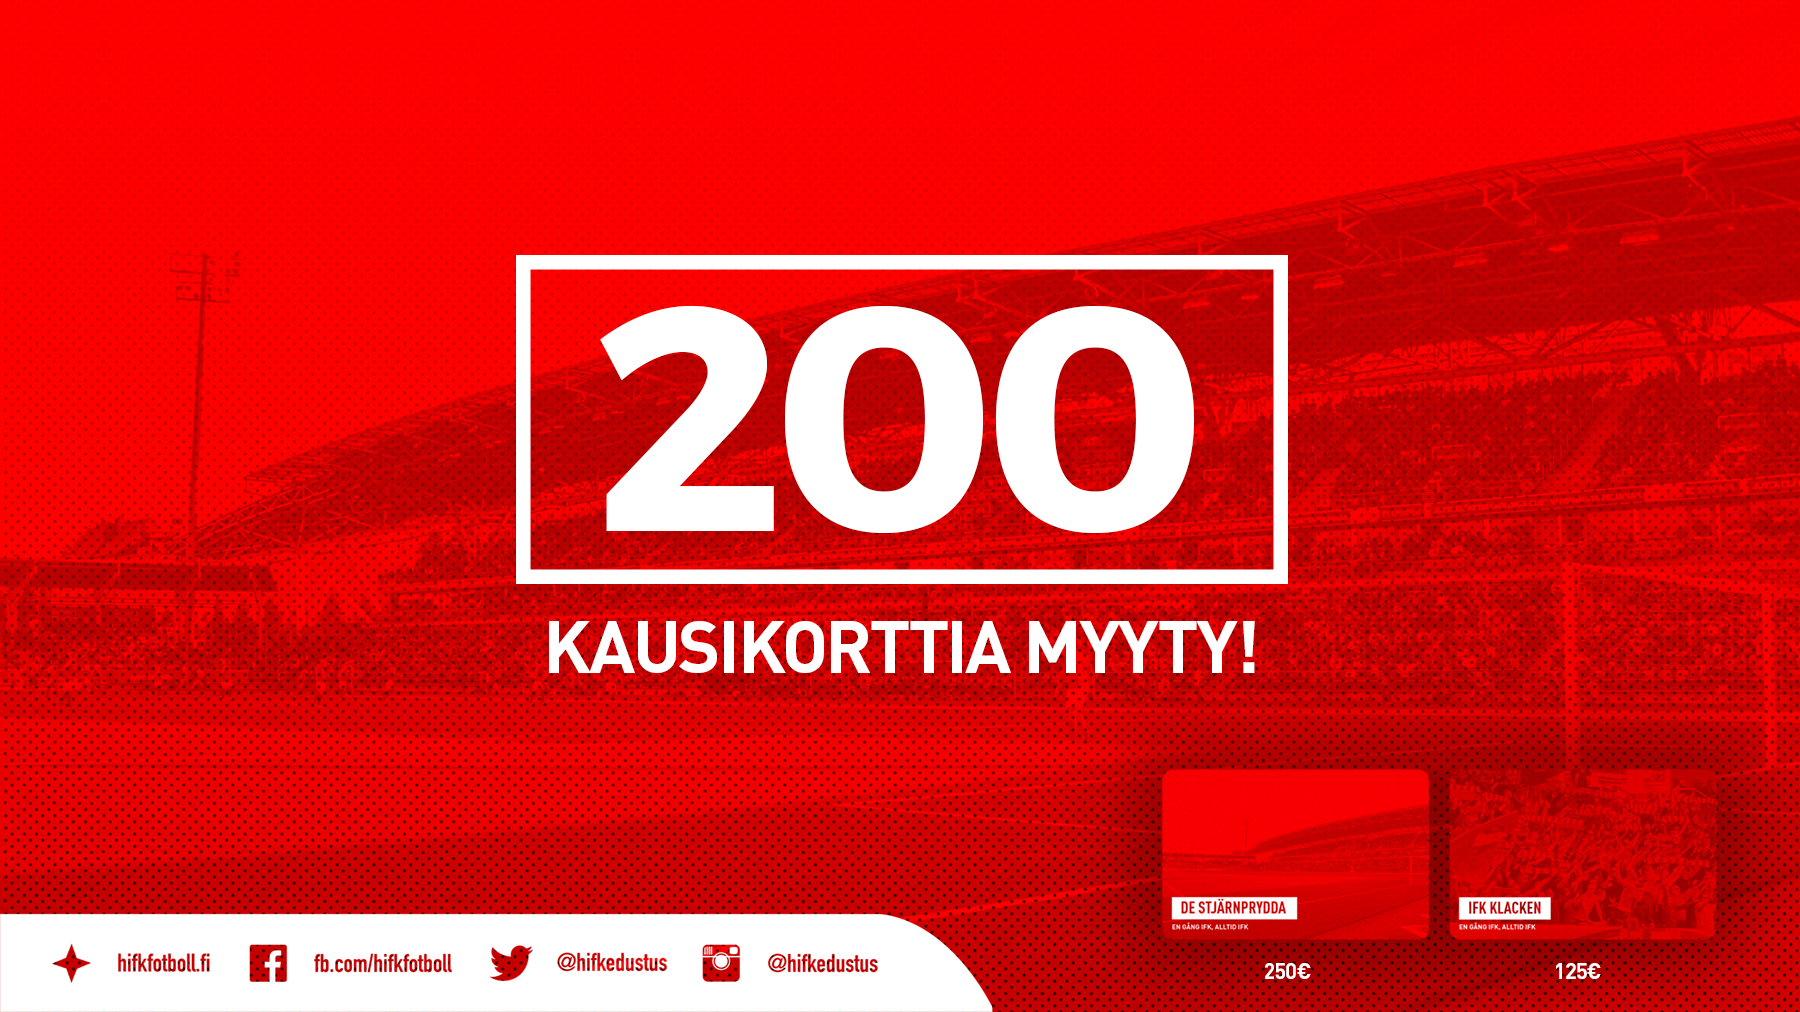 HIFK myynyt viikossa yli 200 kausikorttia